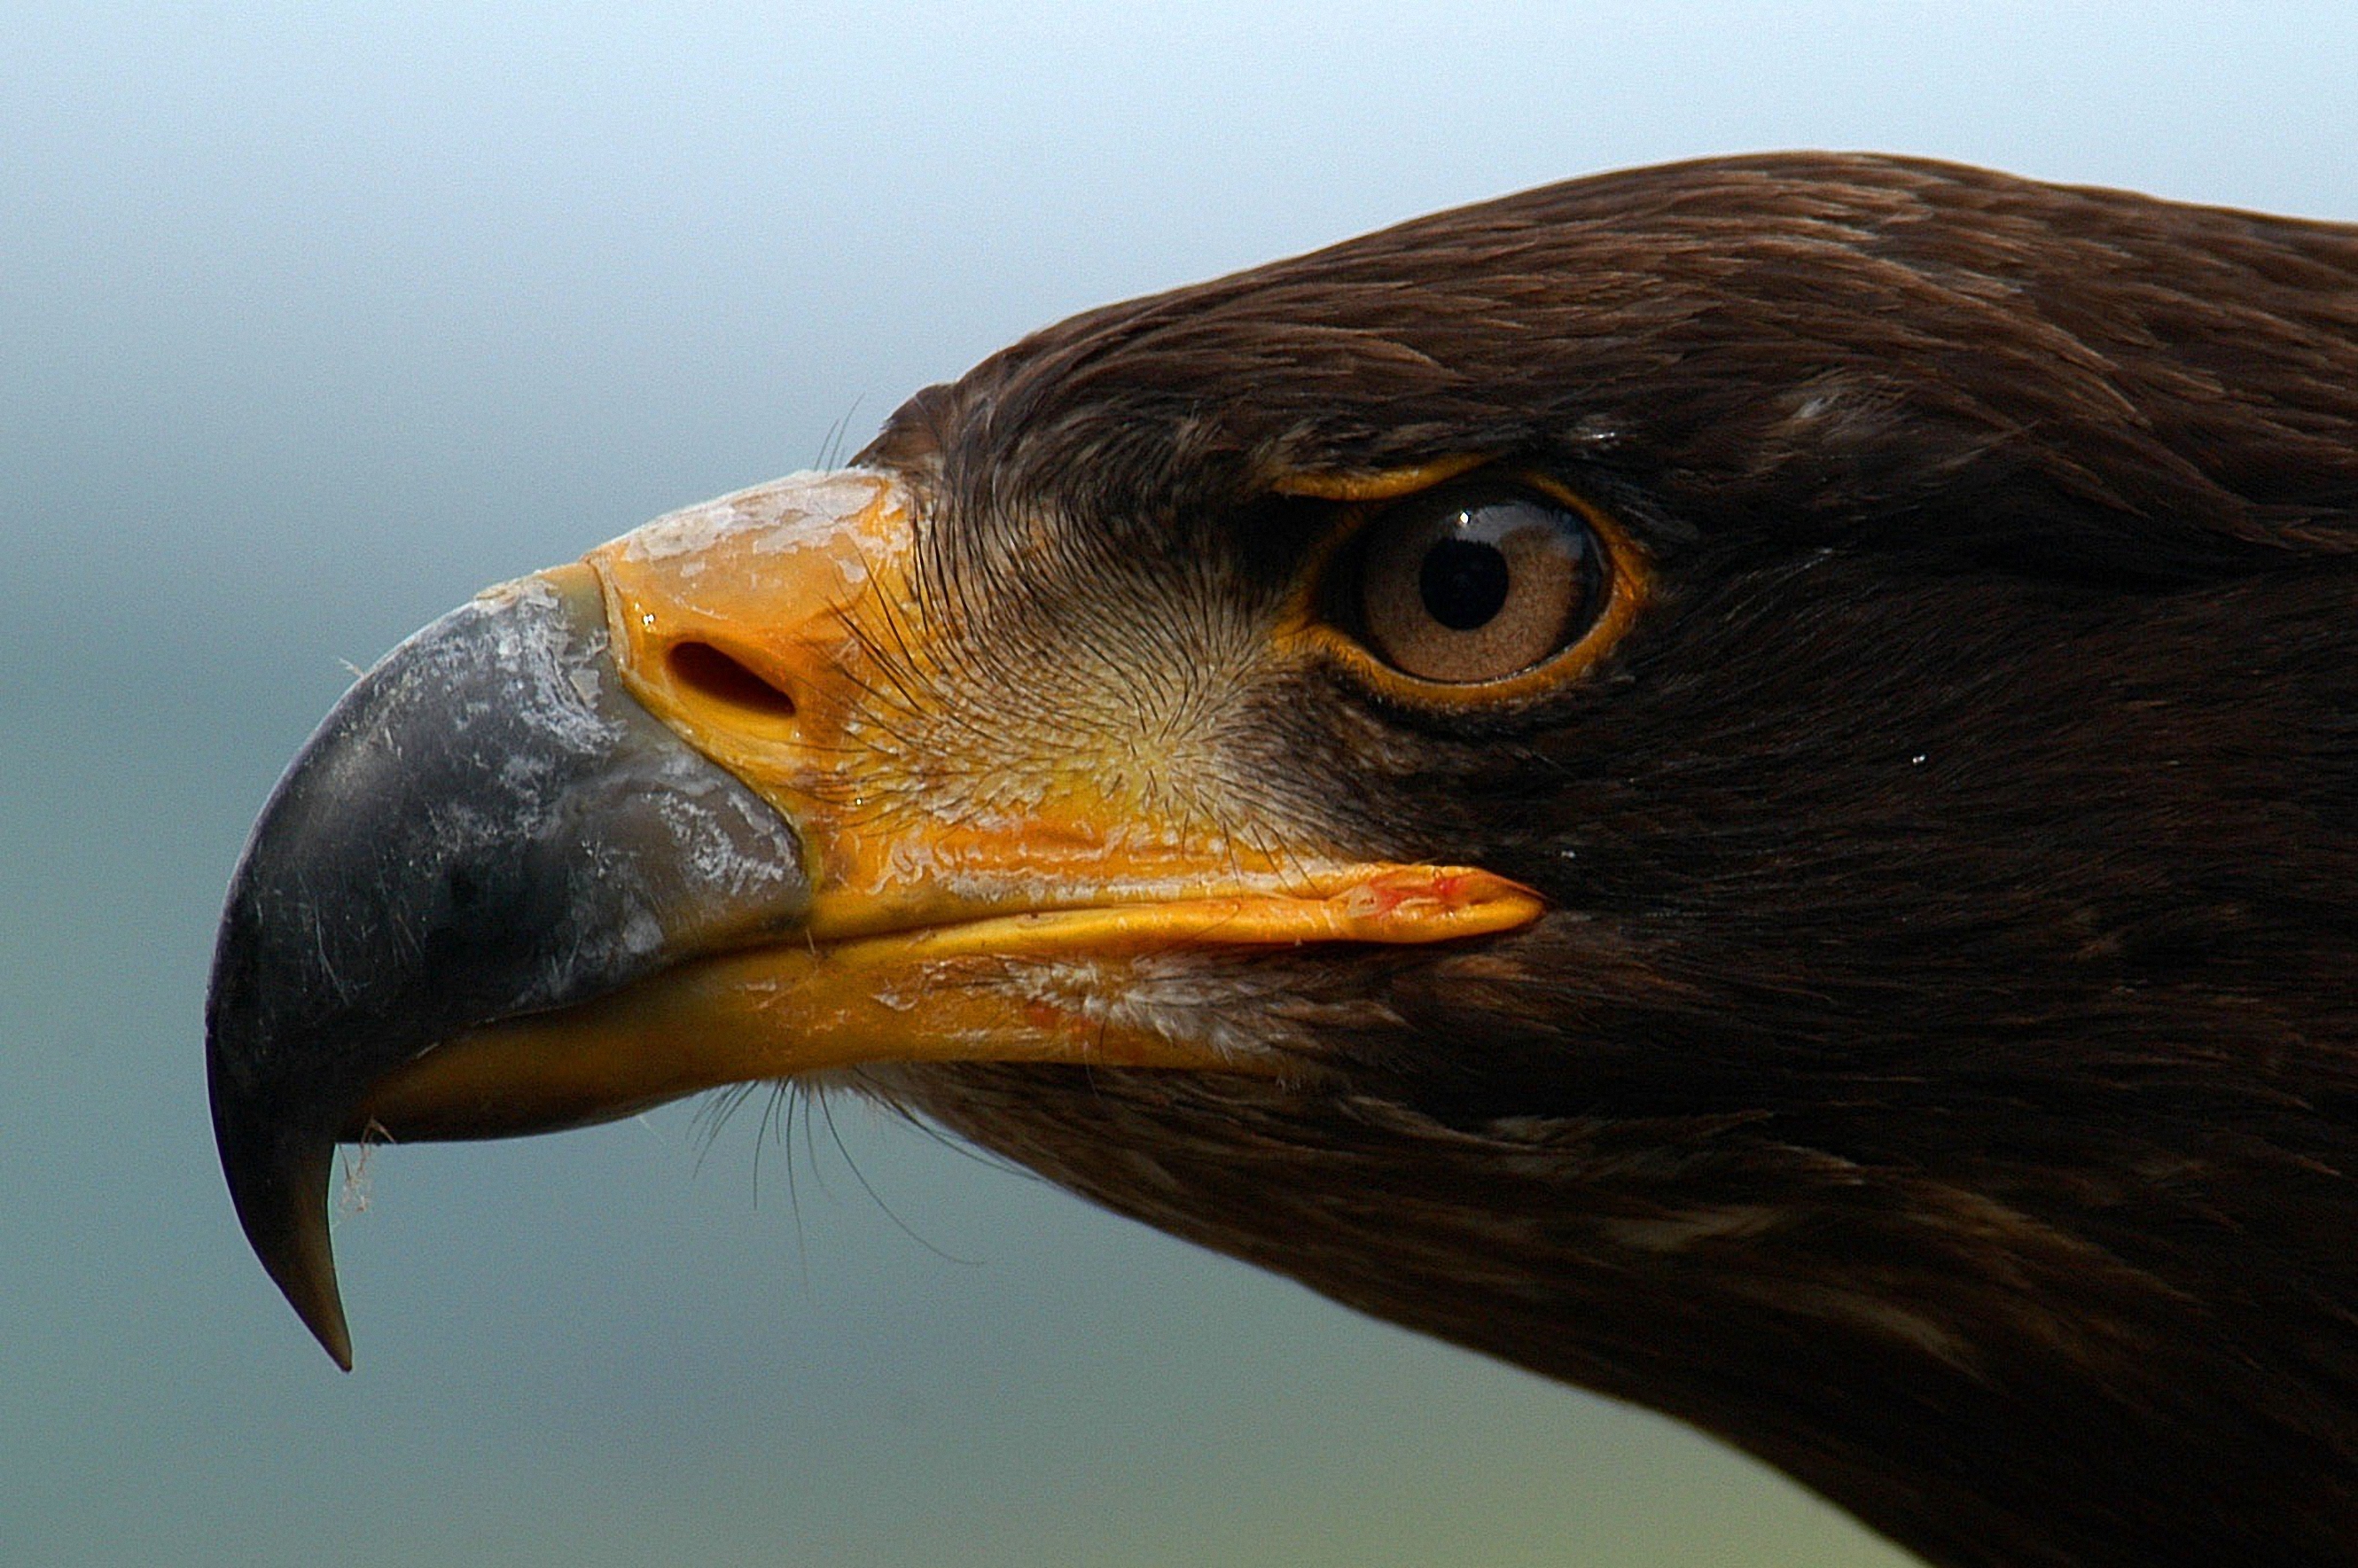 Descarga gratuita de fondo de pantalla para móvil de Águila, Aves, Animales.